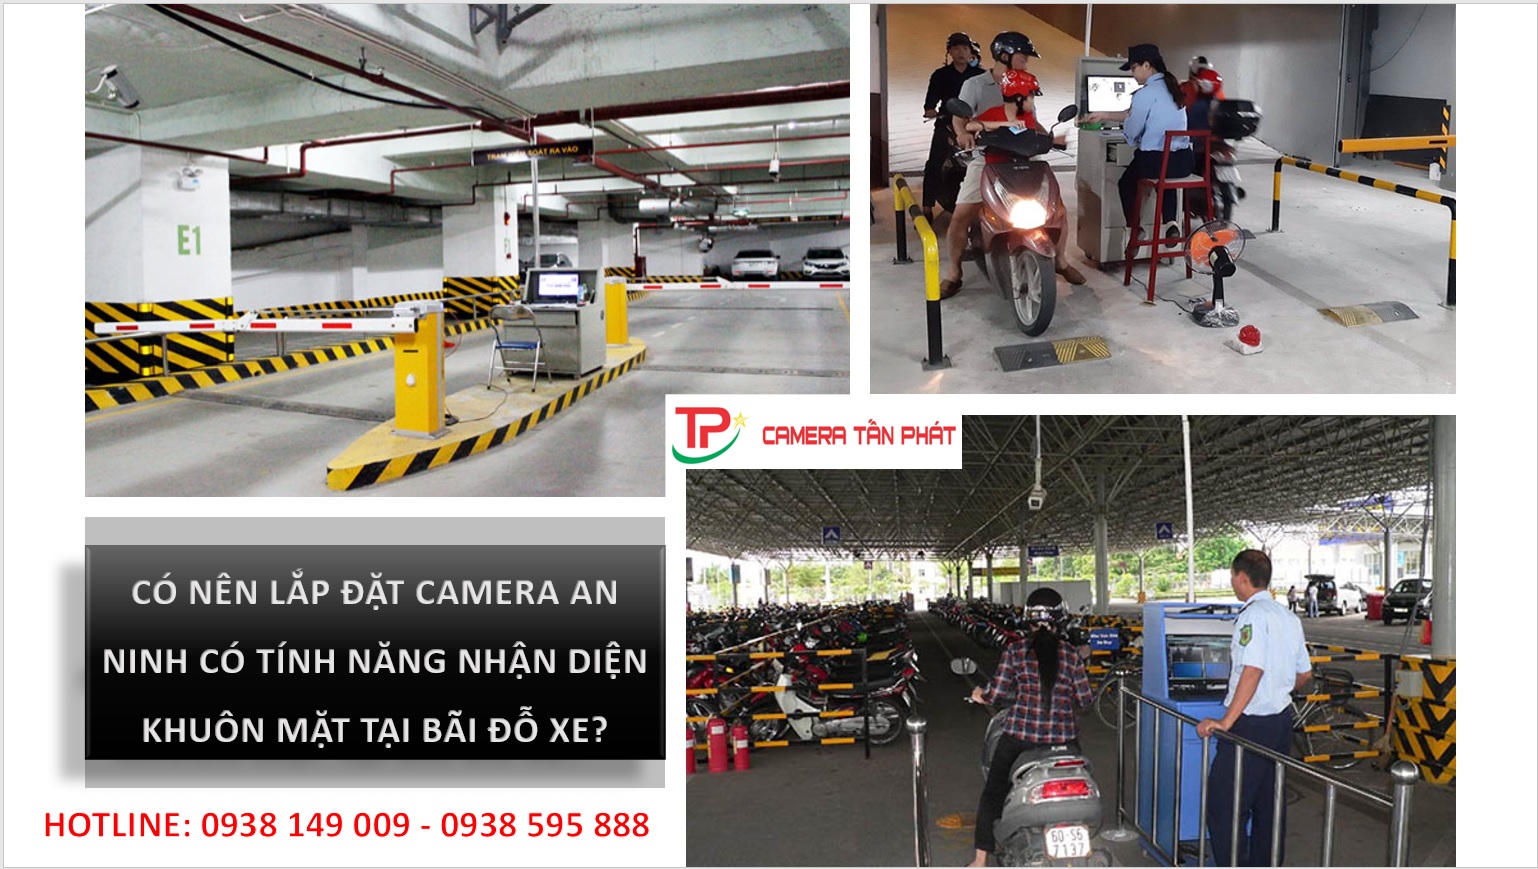 Co Nen Lap Dat Camera An Ninh Co Tinh Nang Nhan Dien Khuon Mat Tai Bai Do